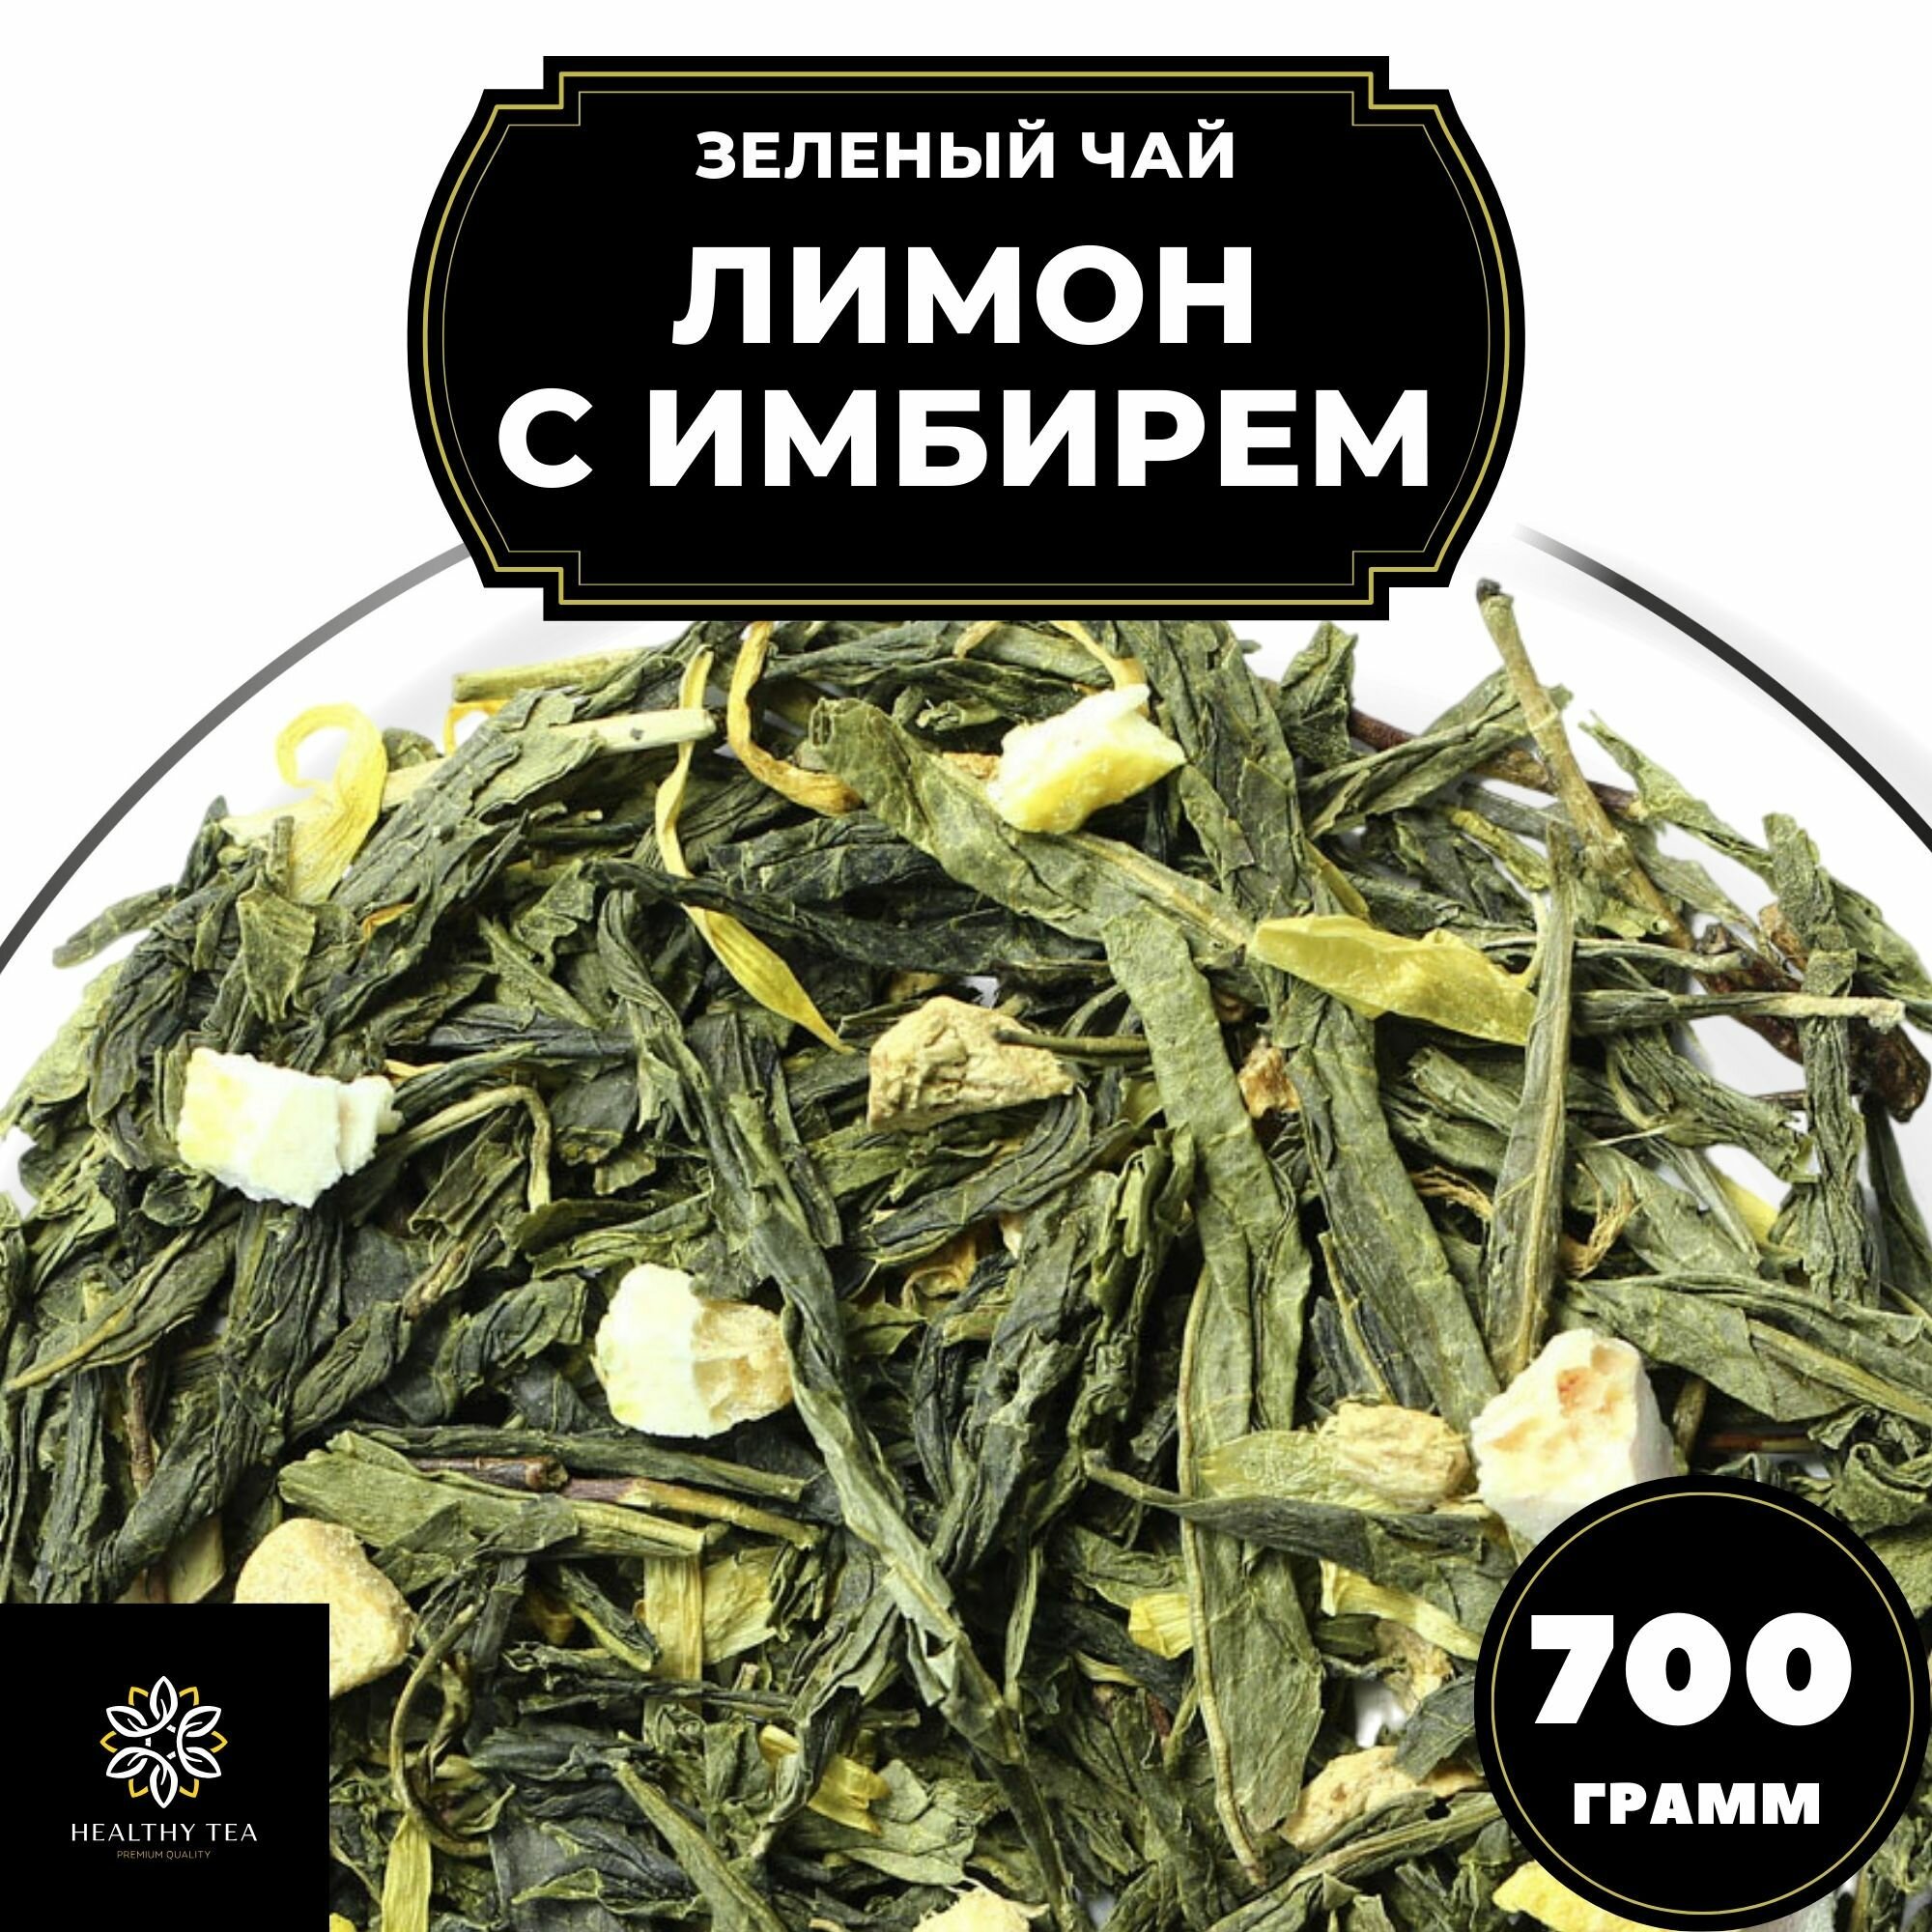 Китайский Зеленый чай с имбирем, лимоном и календулой Лимон с имбирем Полезный чай / HEALTHY TEA, 700 г